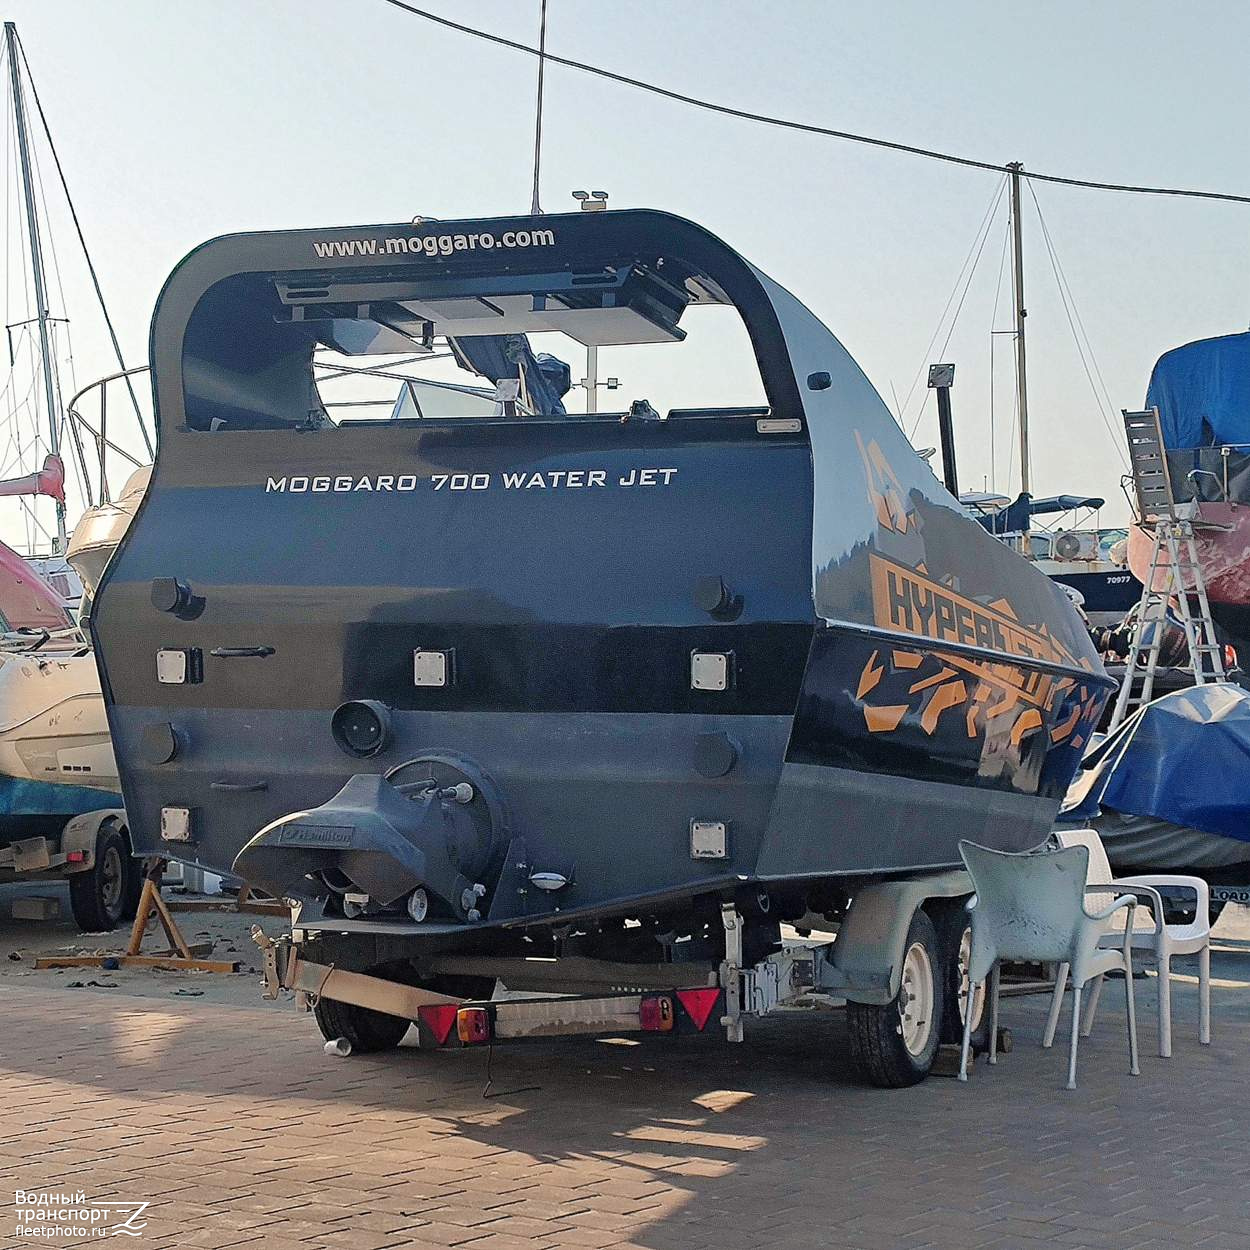 Неопознанное судно - Moggaro 700 Water Jet. Израиль